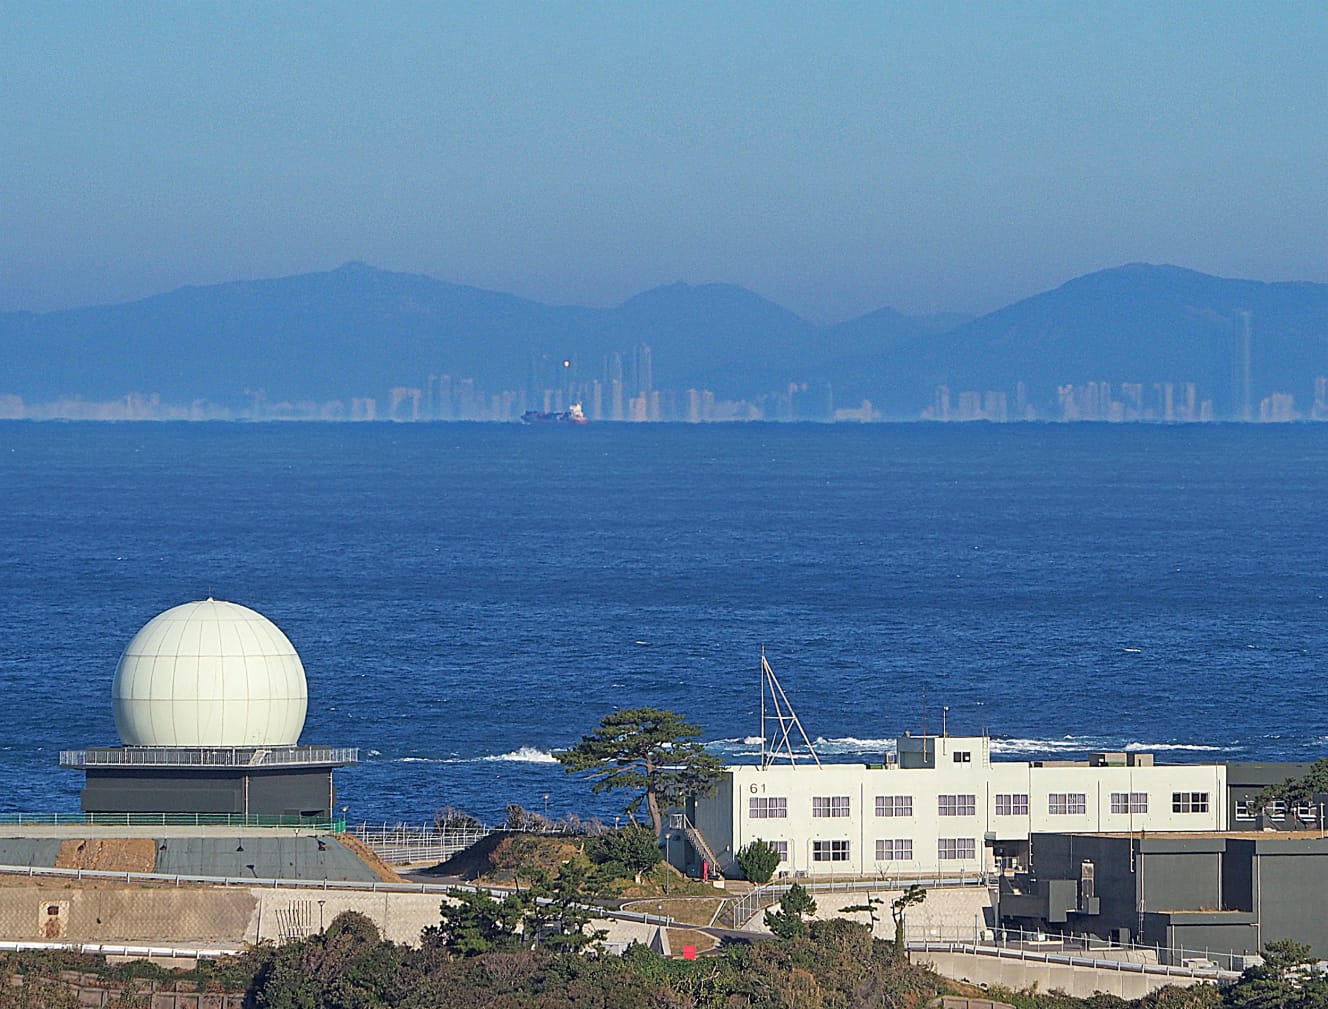 対馬島の北端からは、島から１㎞の地点にある海栗島（うにじま）の自衛隊レーダー越しに、釜山の街並みがうっすらと見える